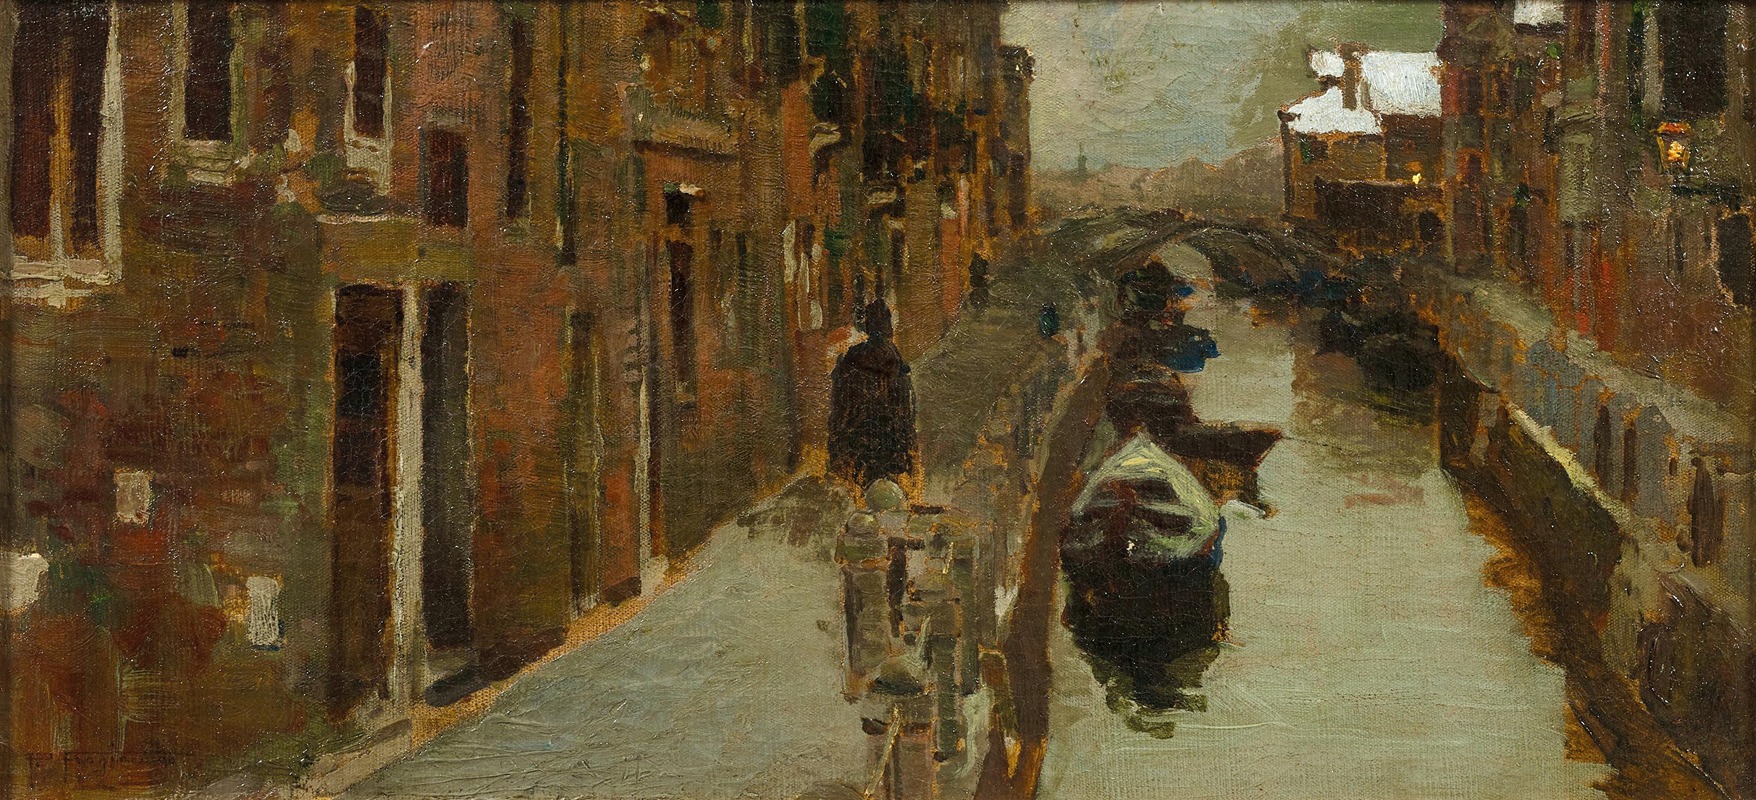 Pietro Fragiacomo - Venice, A View of a Winter Canal